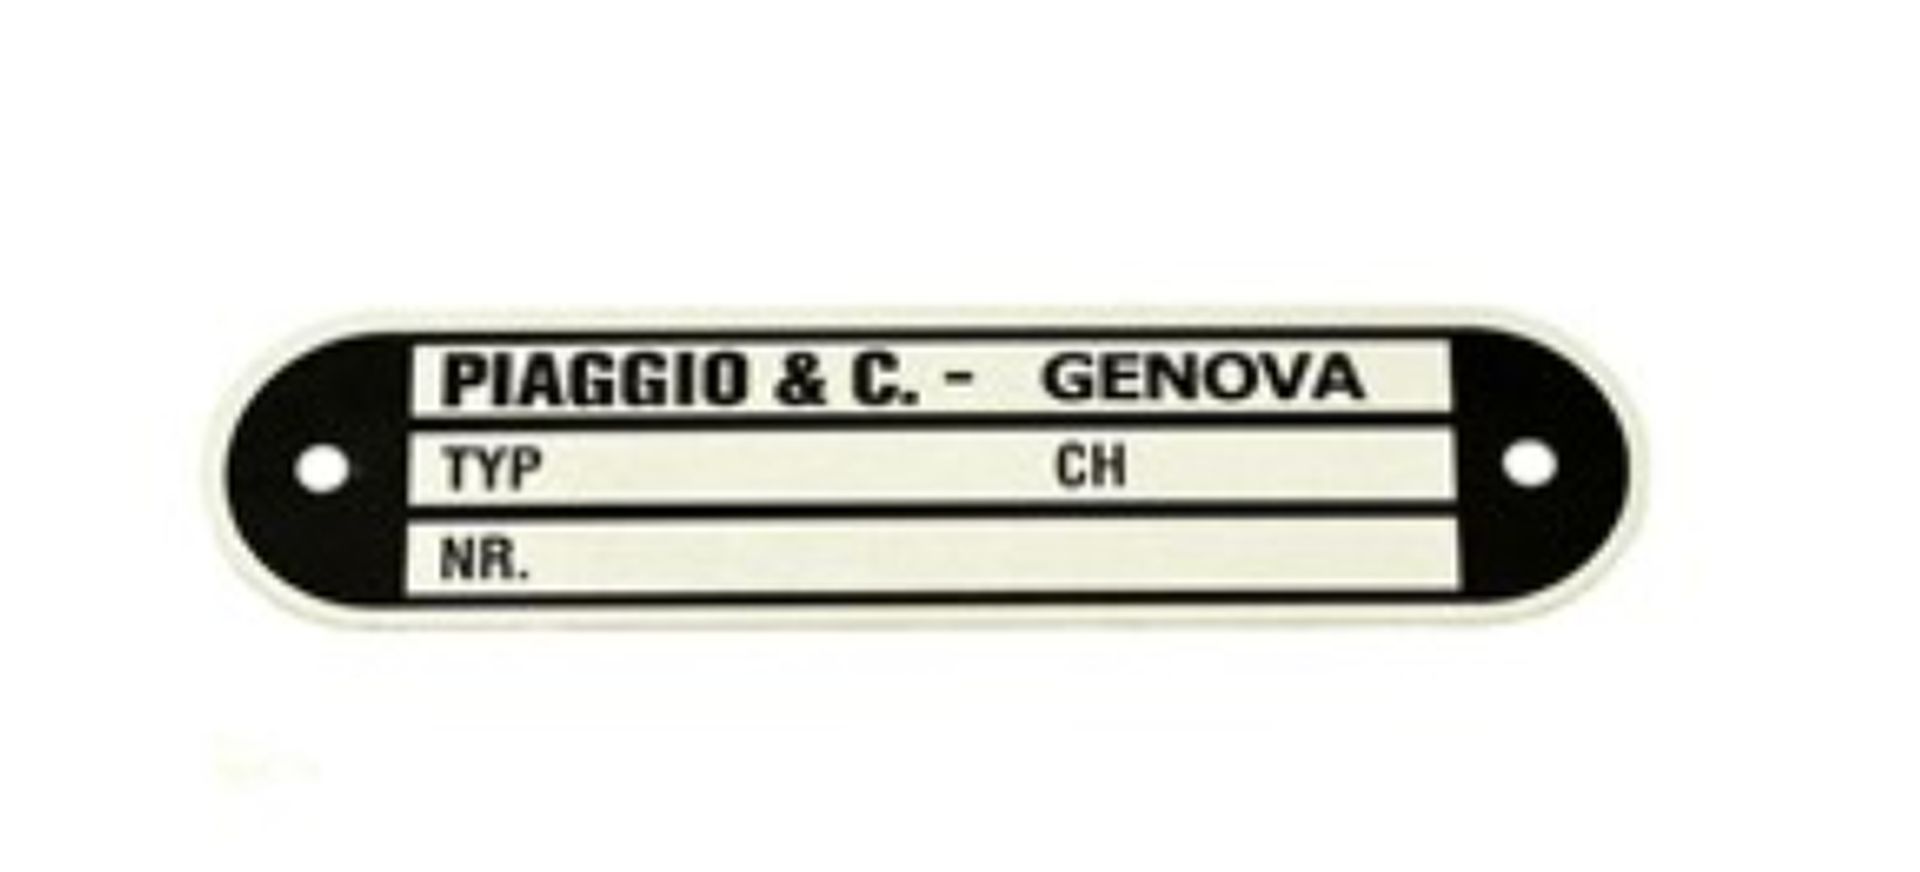 Piaggio Typenschild / Herstellerschild